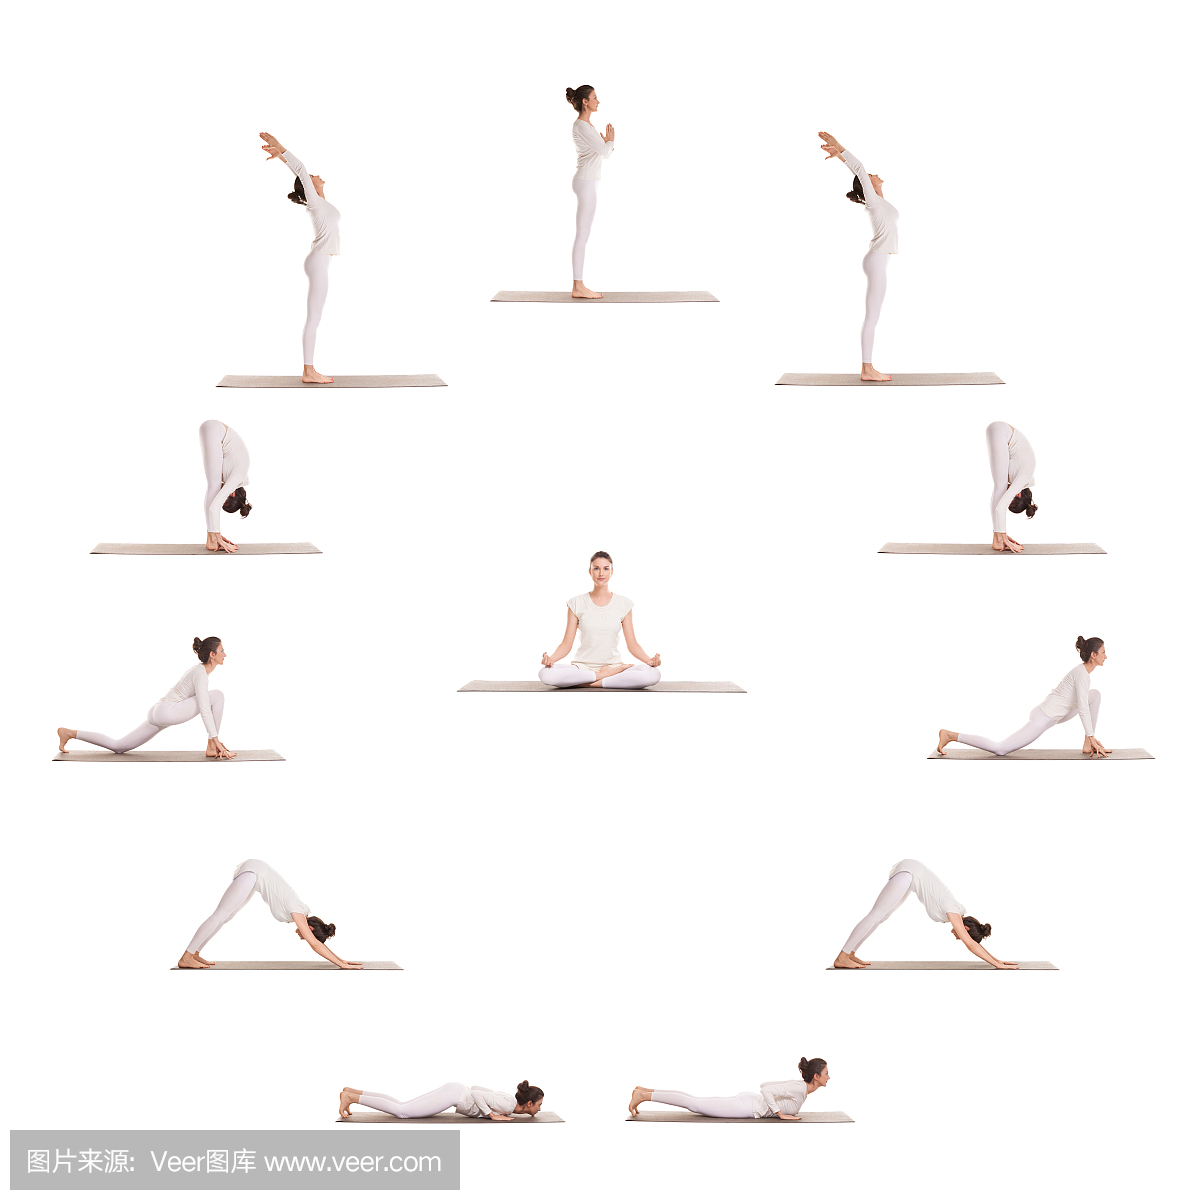 五个瑜伽姿势分类合集 帮助设置瑜伽日常练习序列 包含站坐平衡-搜狐大视野-搜狐新闻